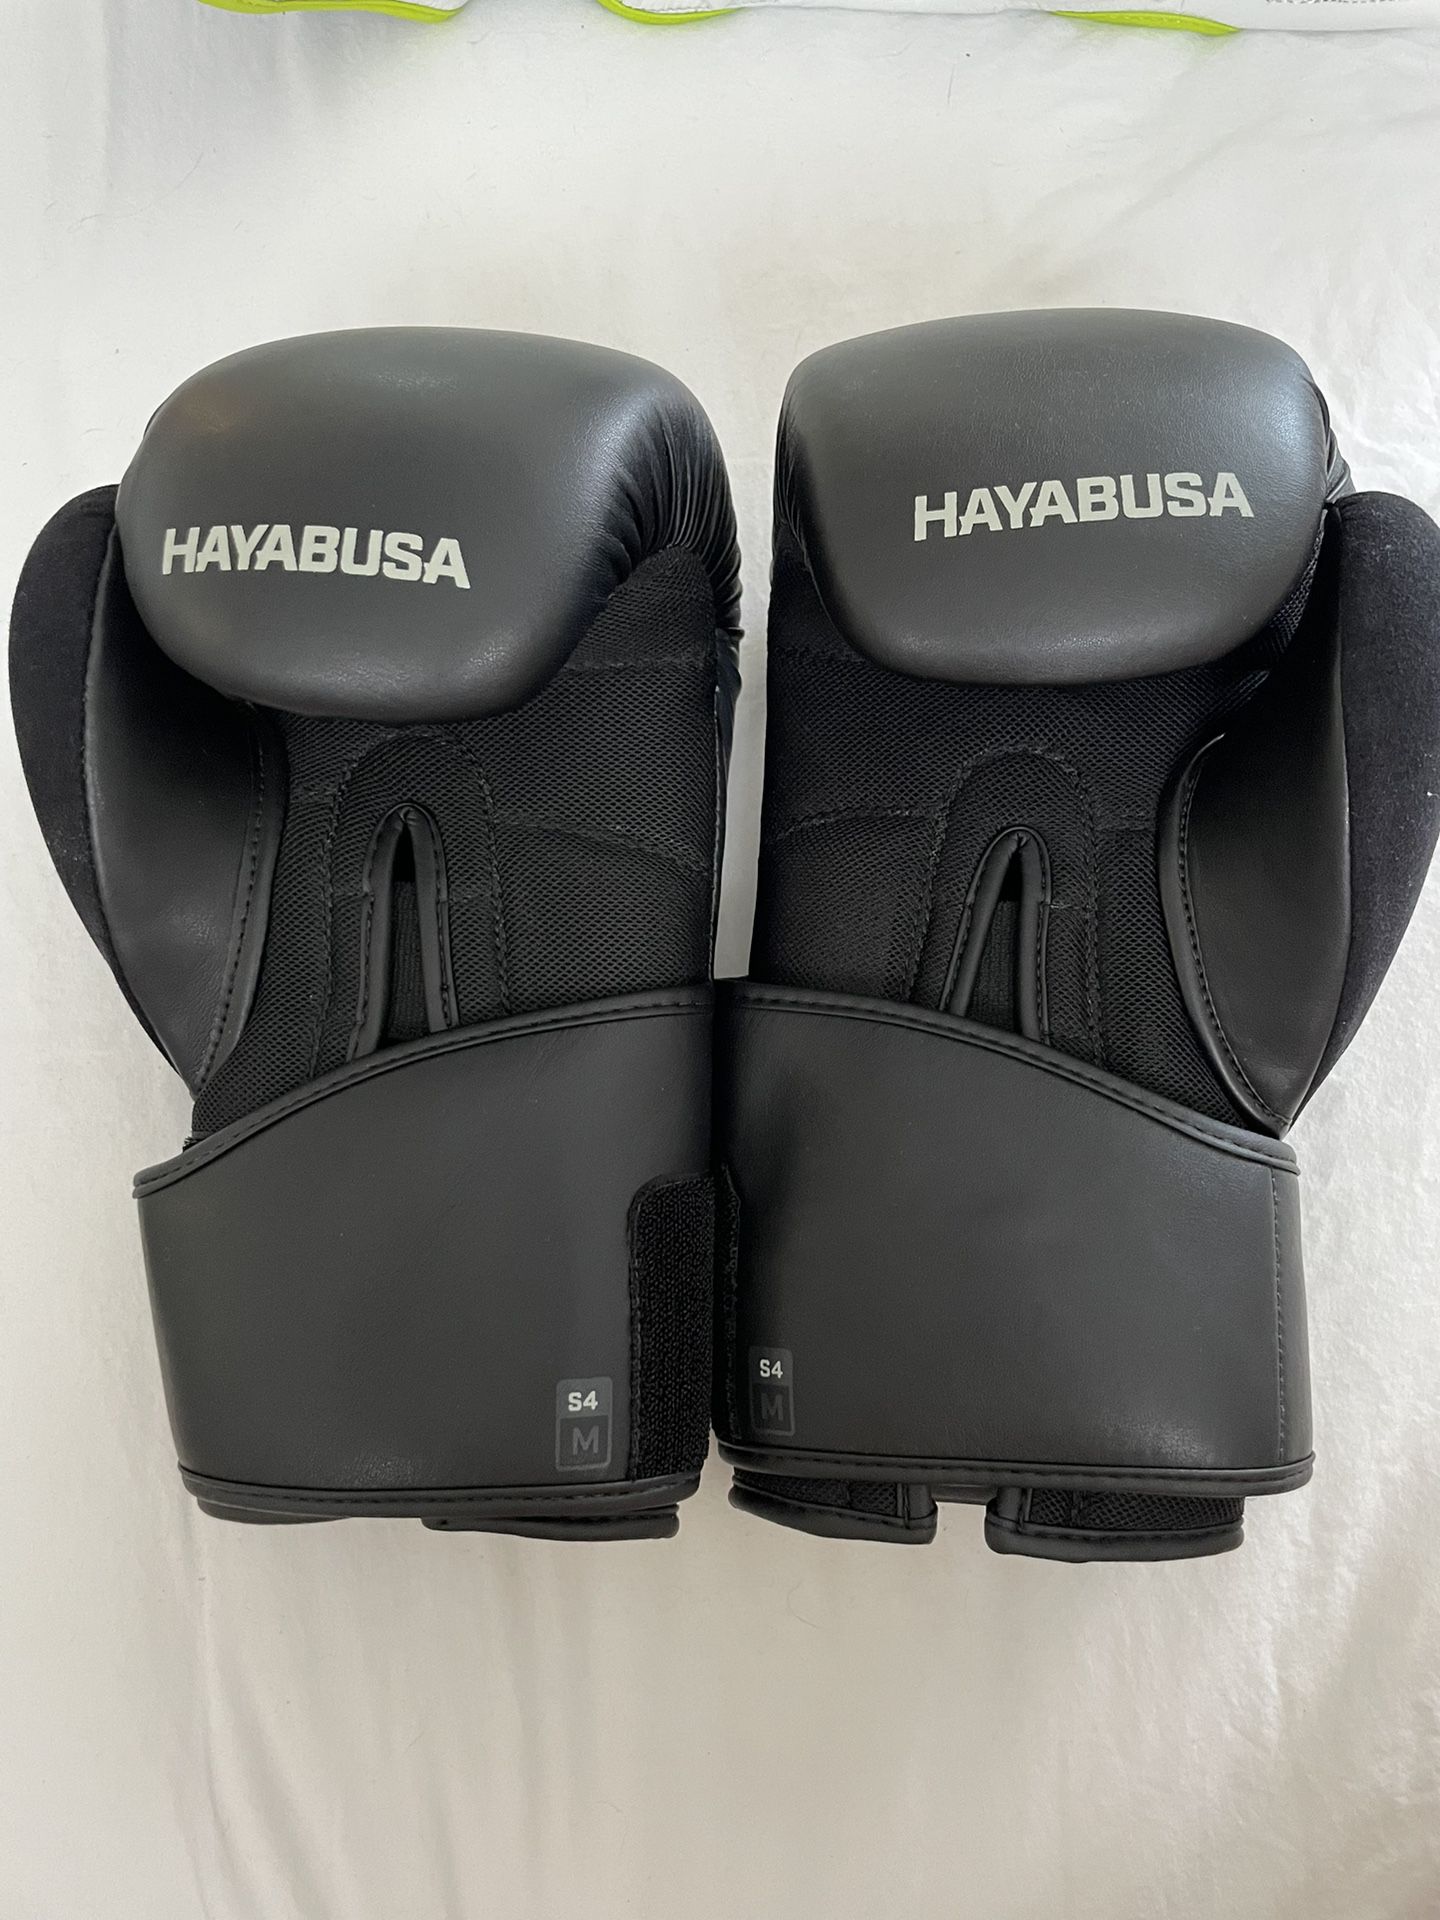 Hayabusa Kick Boxing Gloves